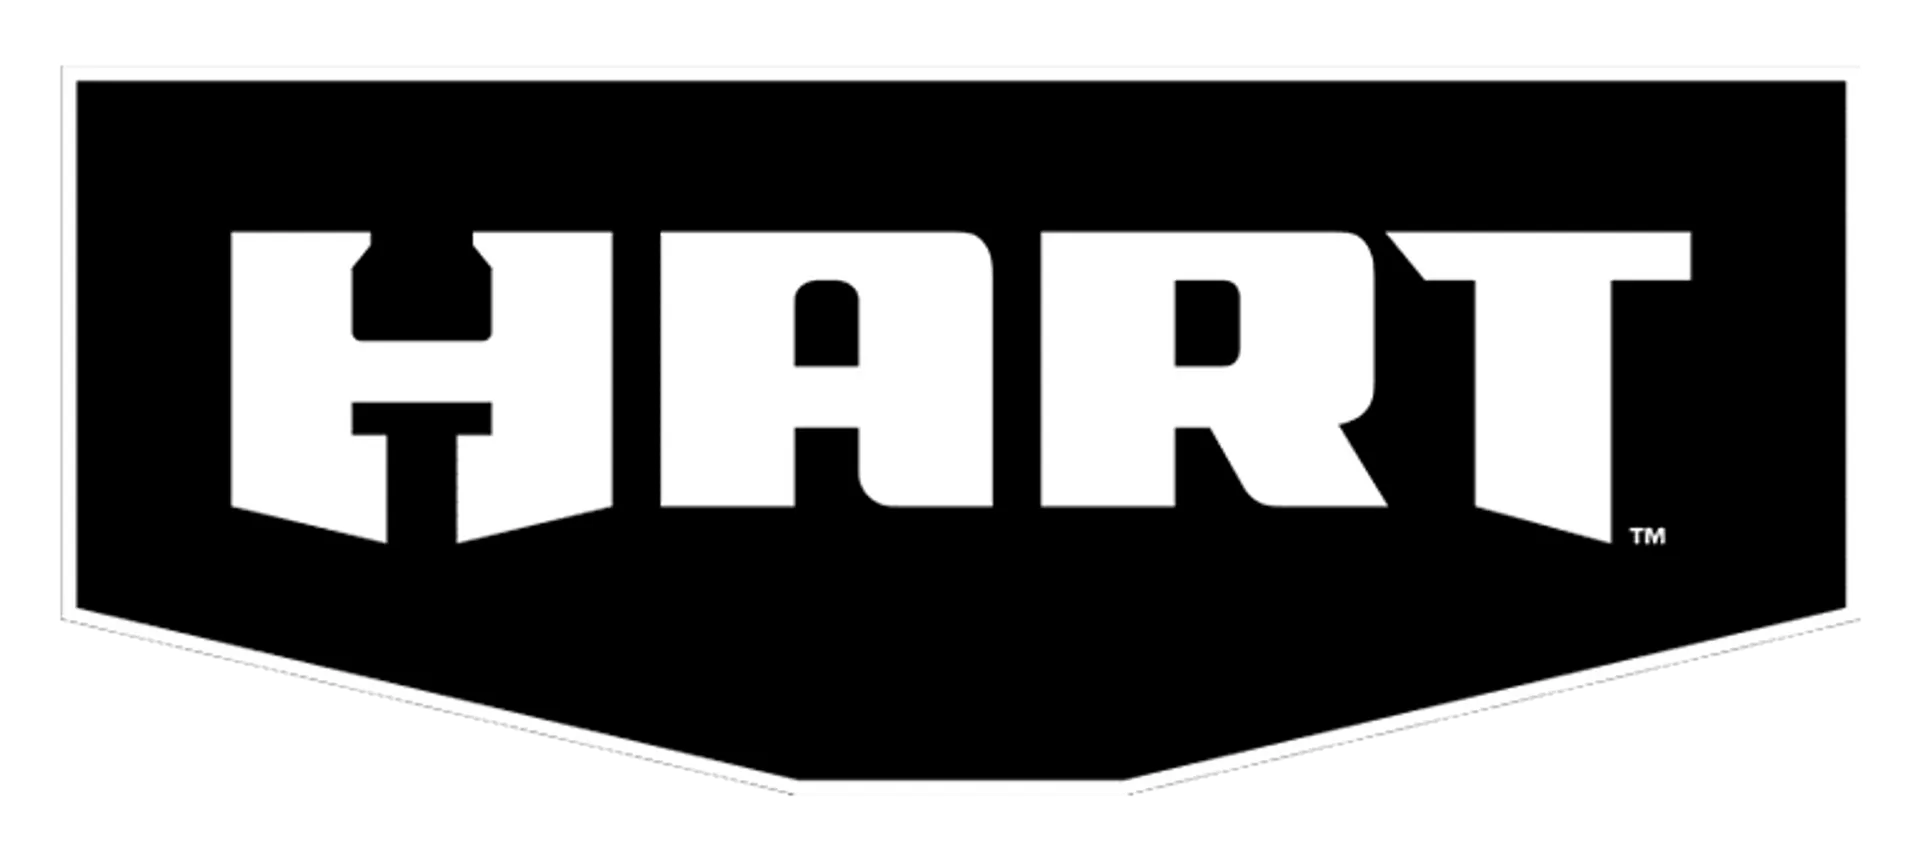 HERRAMIENTAS HART logo de catálogo